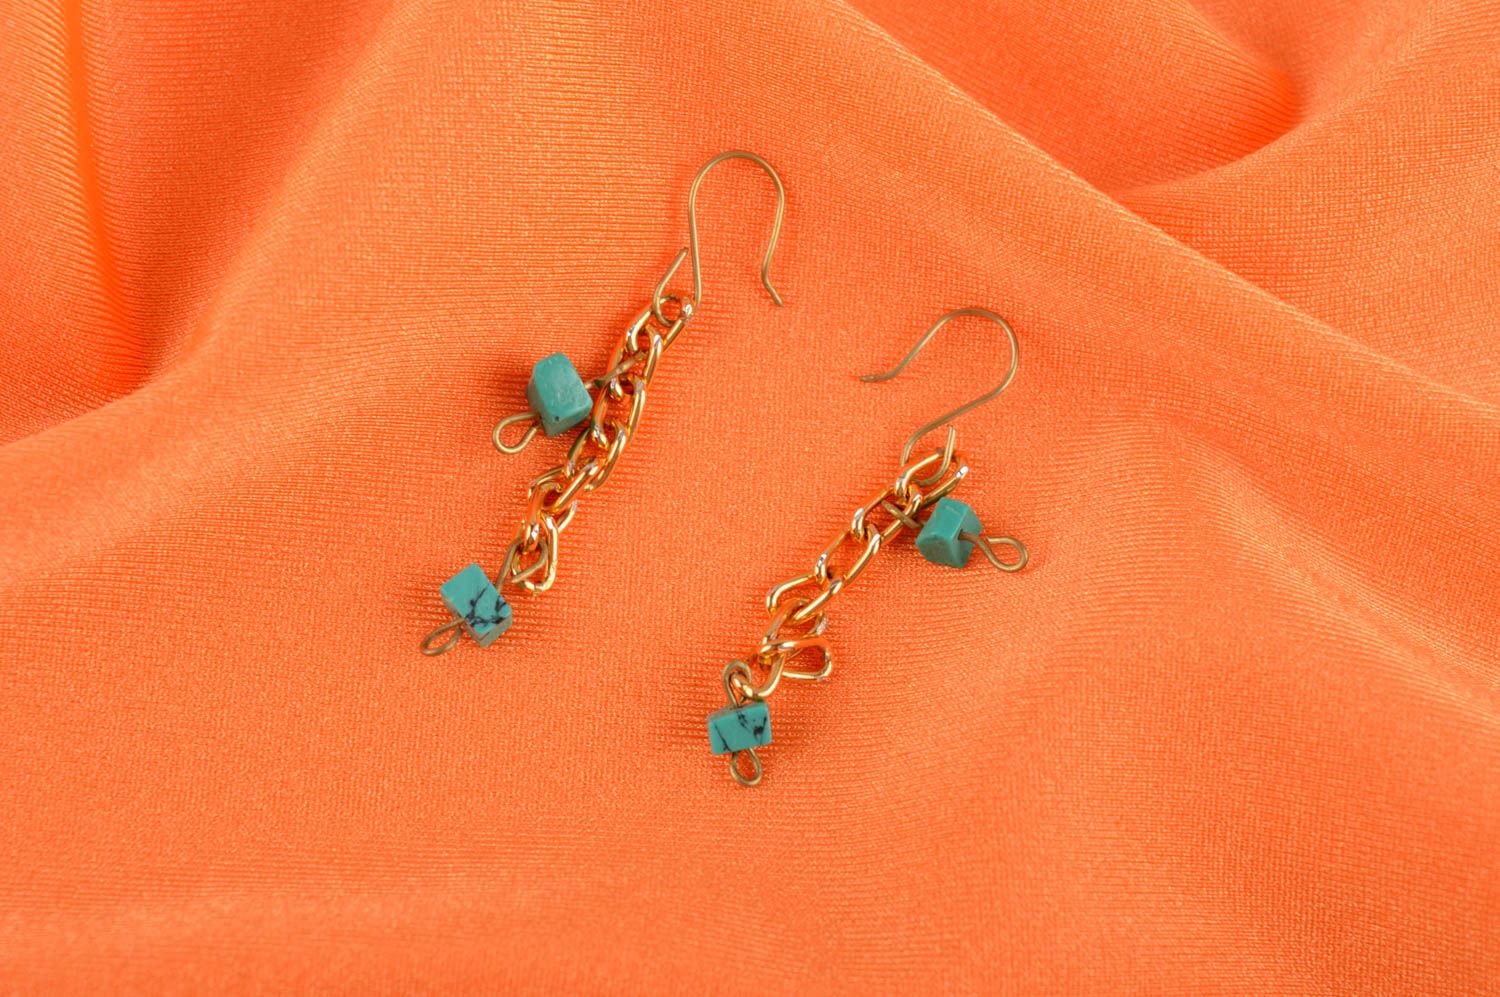 Handmade earrings metal jewelry dangling earrings long earrings fashion jewelry photo 1